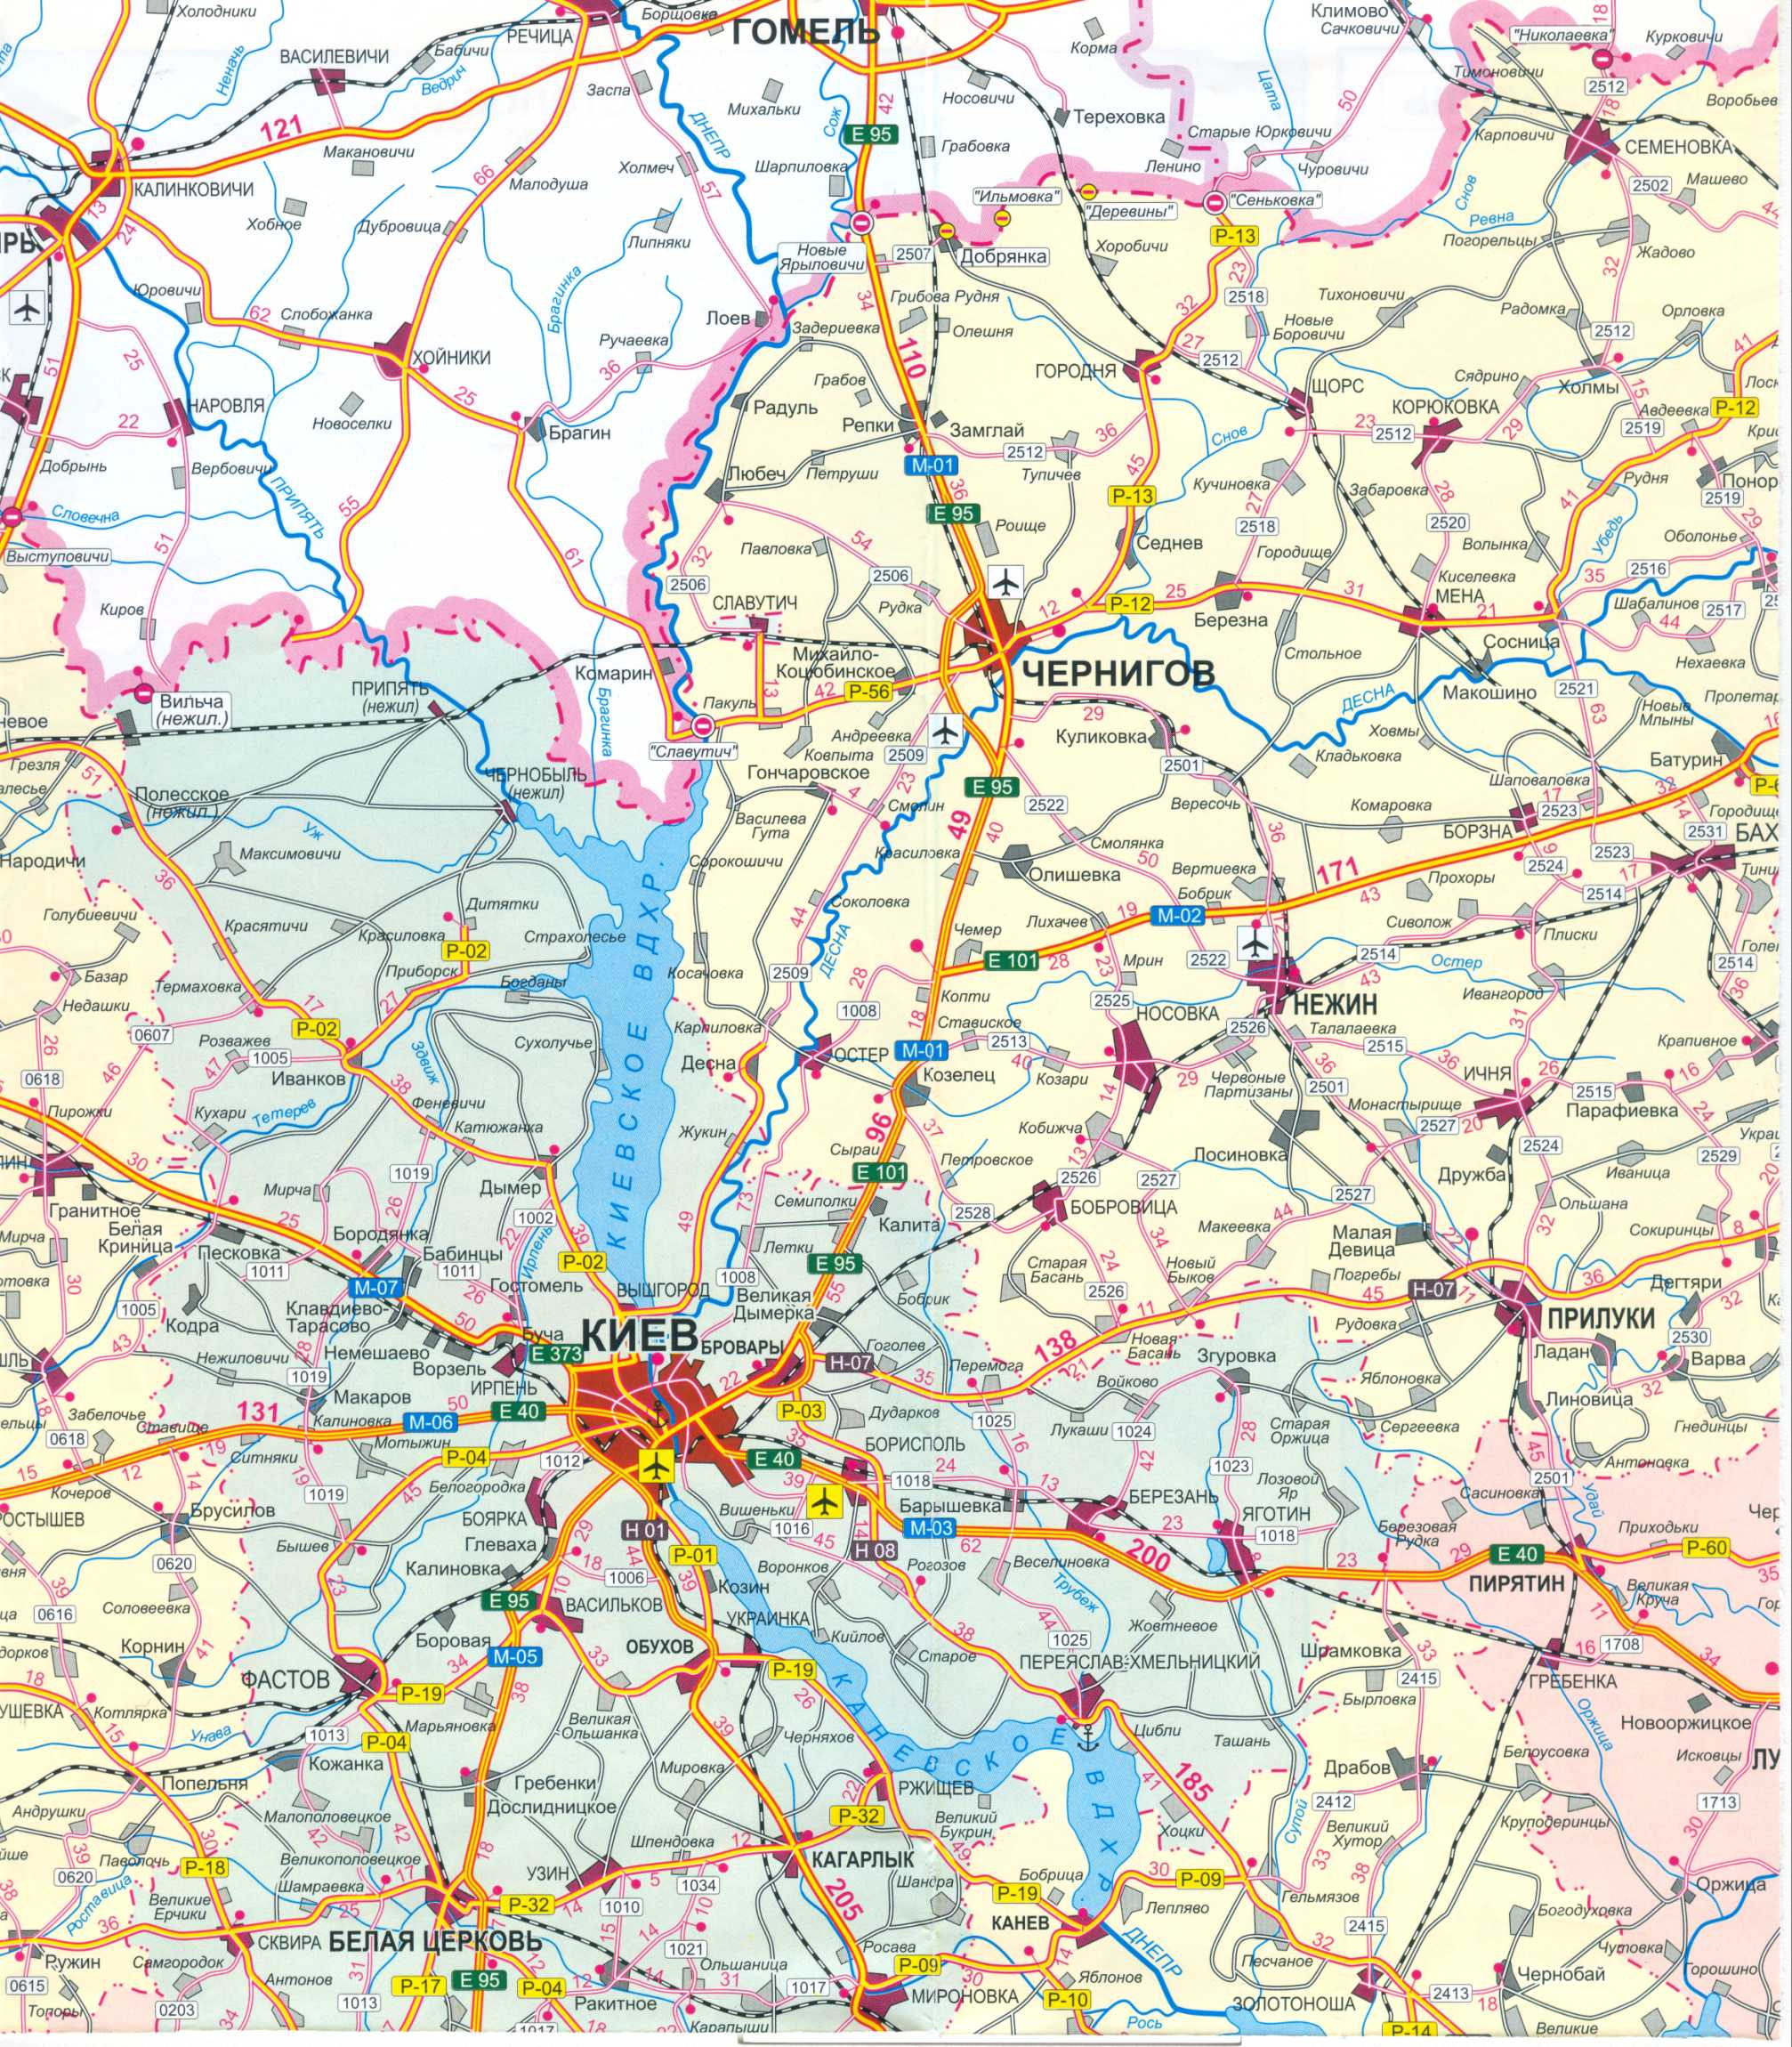 Karte der Ukraine frei. Road Map der Ukraine kostenlos herunterladen. Große Karte von Ukraine Straßen frei, C0